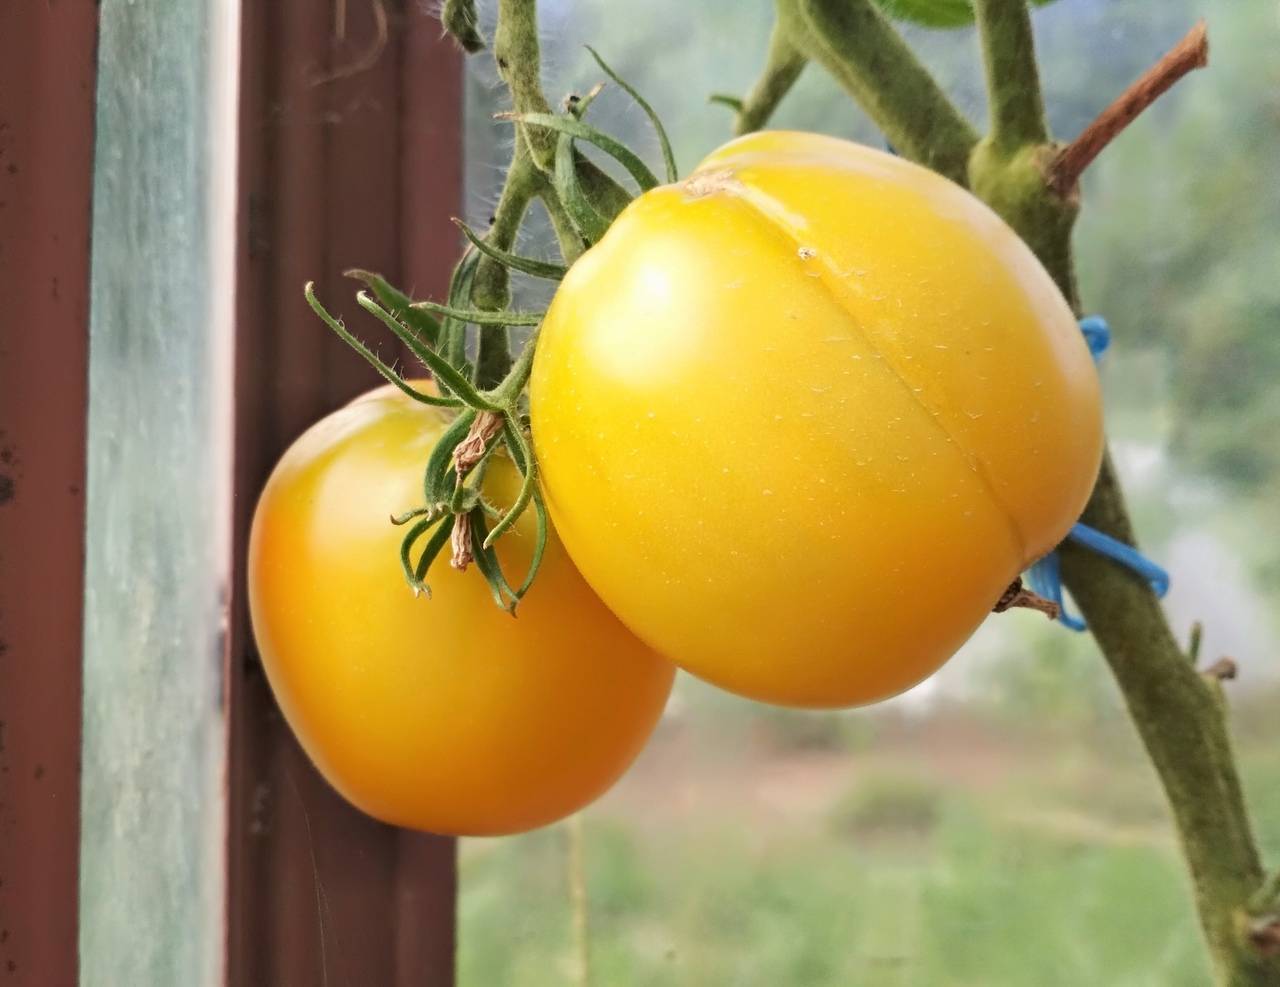 Томат илья муромец: характеристика и описание сорта, отзывы тех кто сажал помидоры об их урожайности, фото рассады